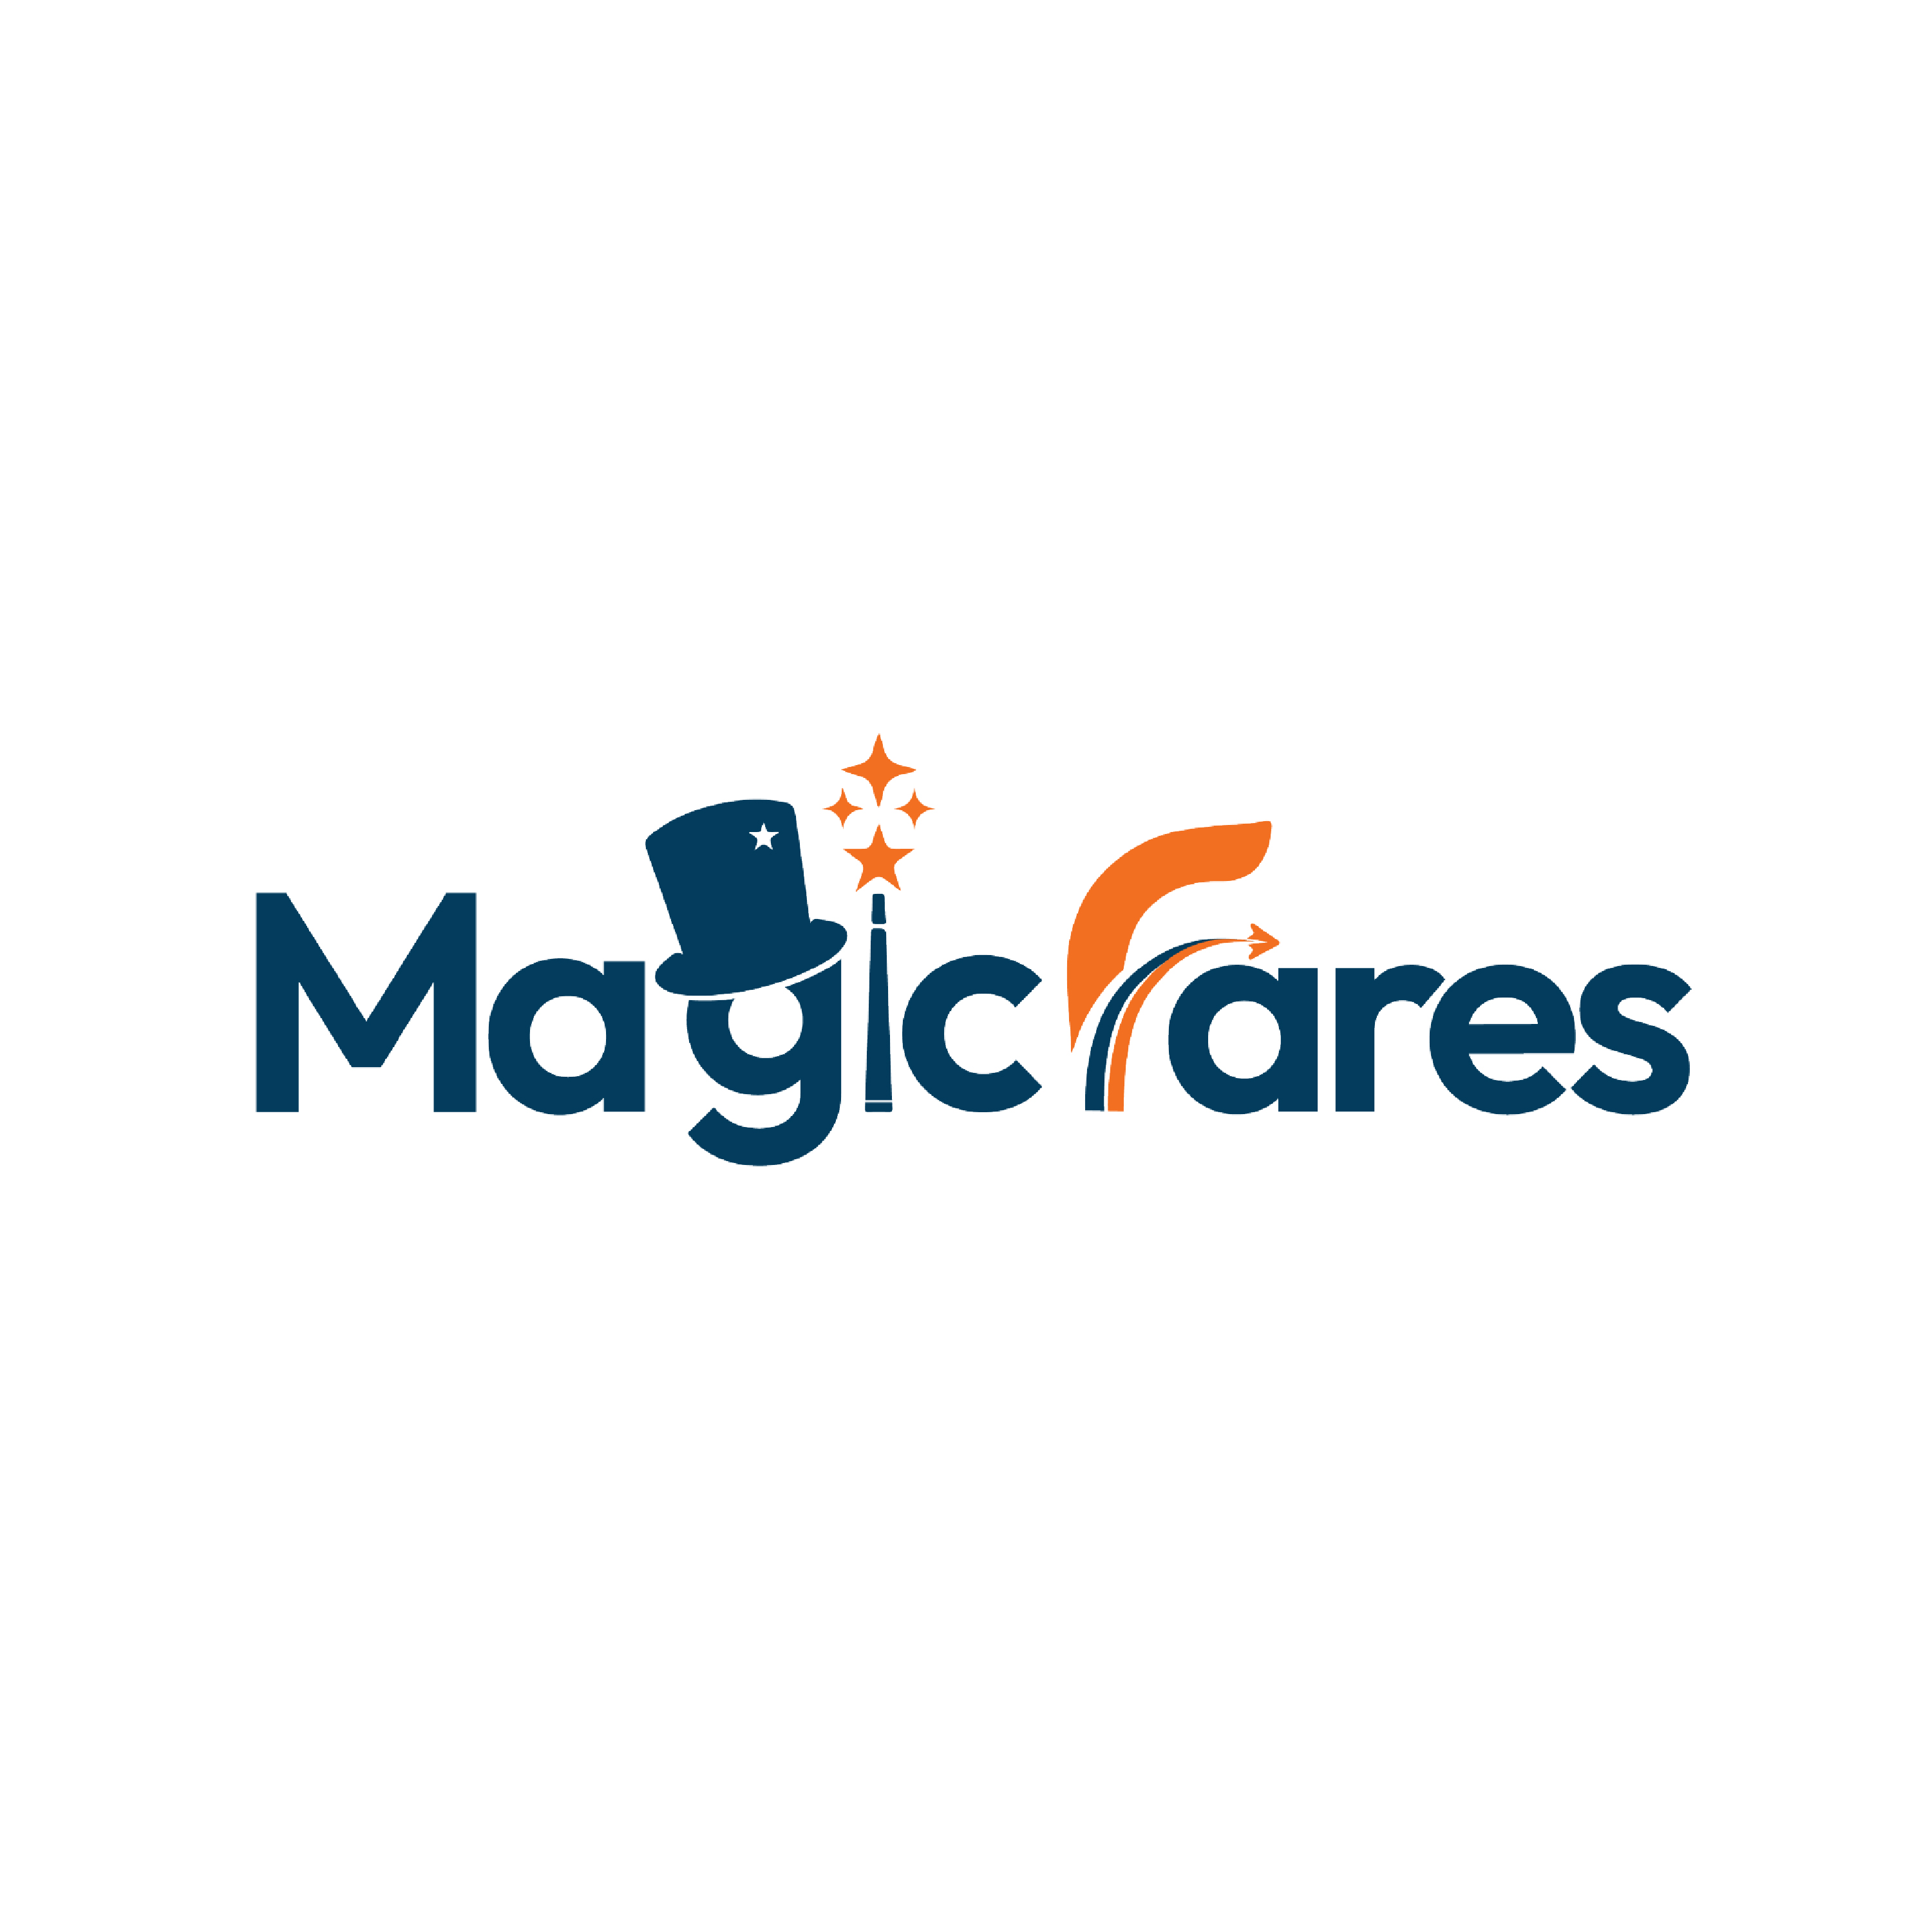 Magicfares Logo